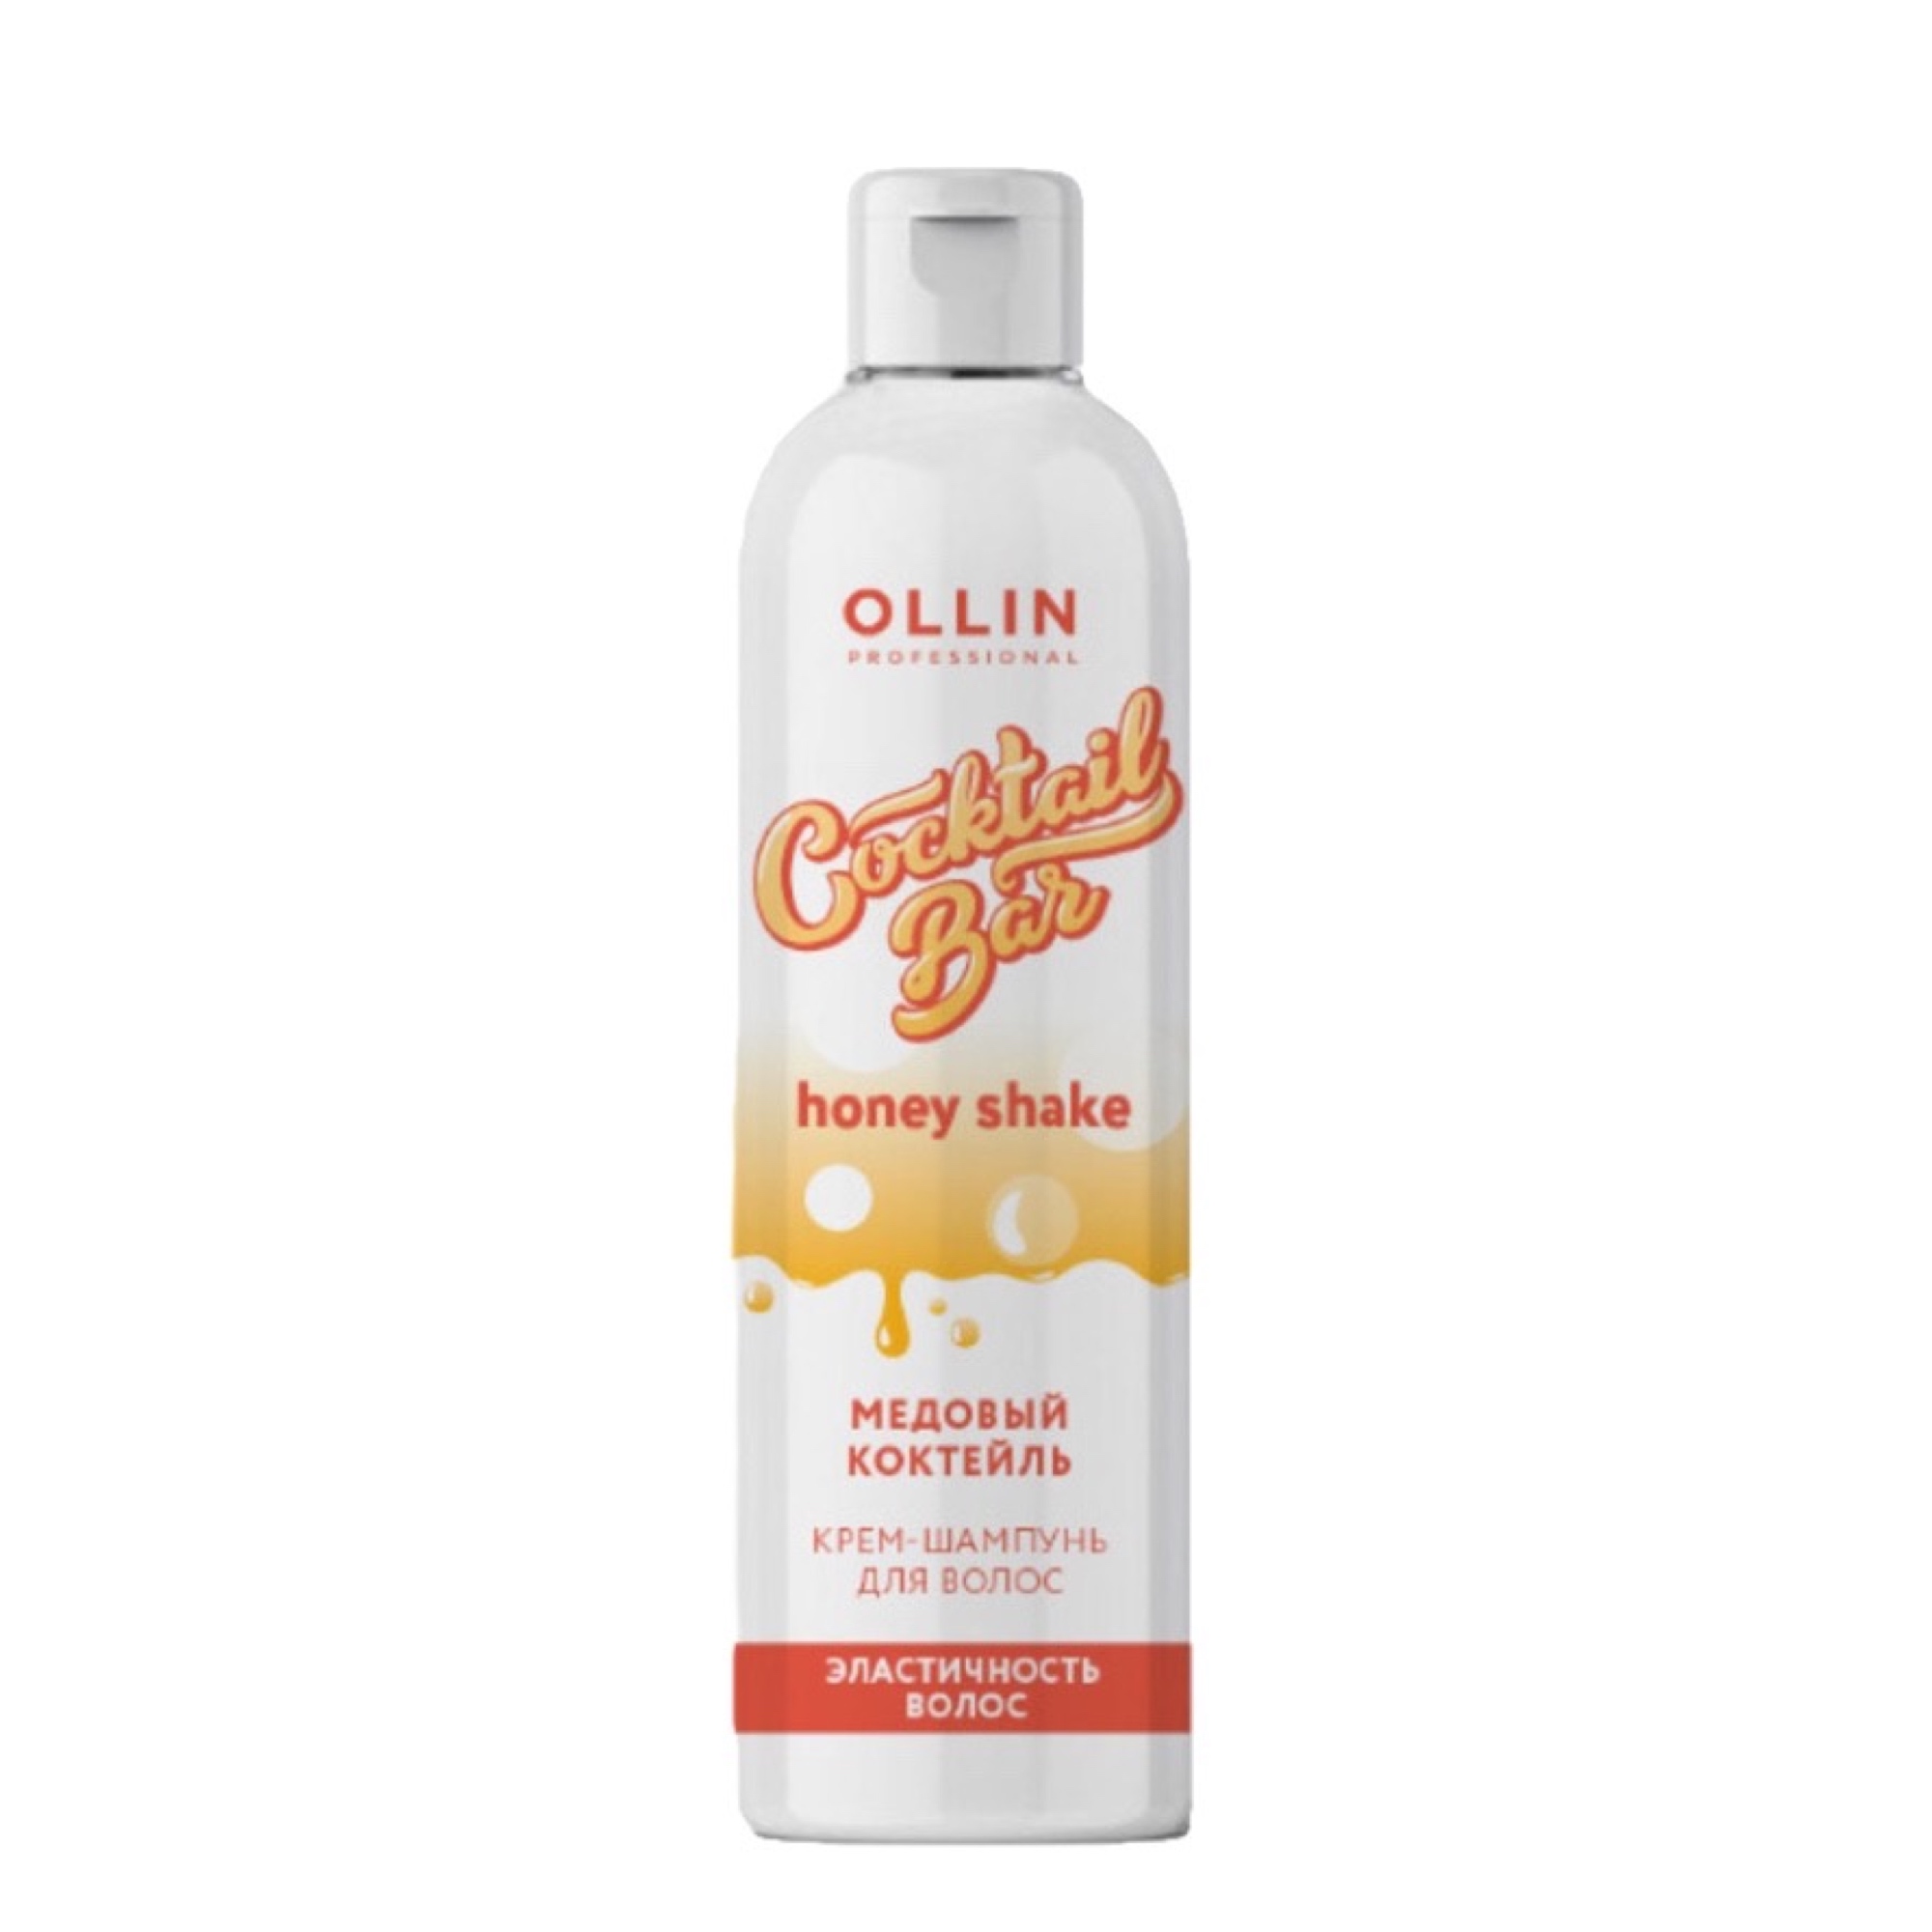 Ollin Professional Крем-шампунь «Медовый коктейль» для эластичности волос,400 мл (Ollin Professional, Coctail Bar)